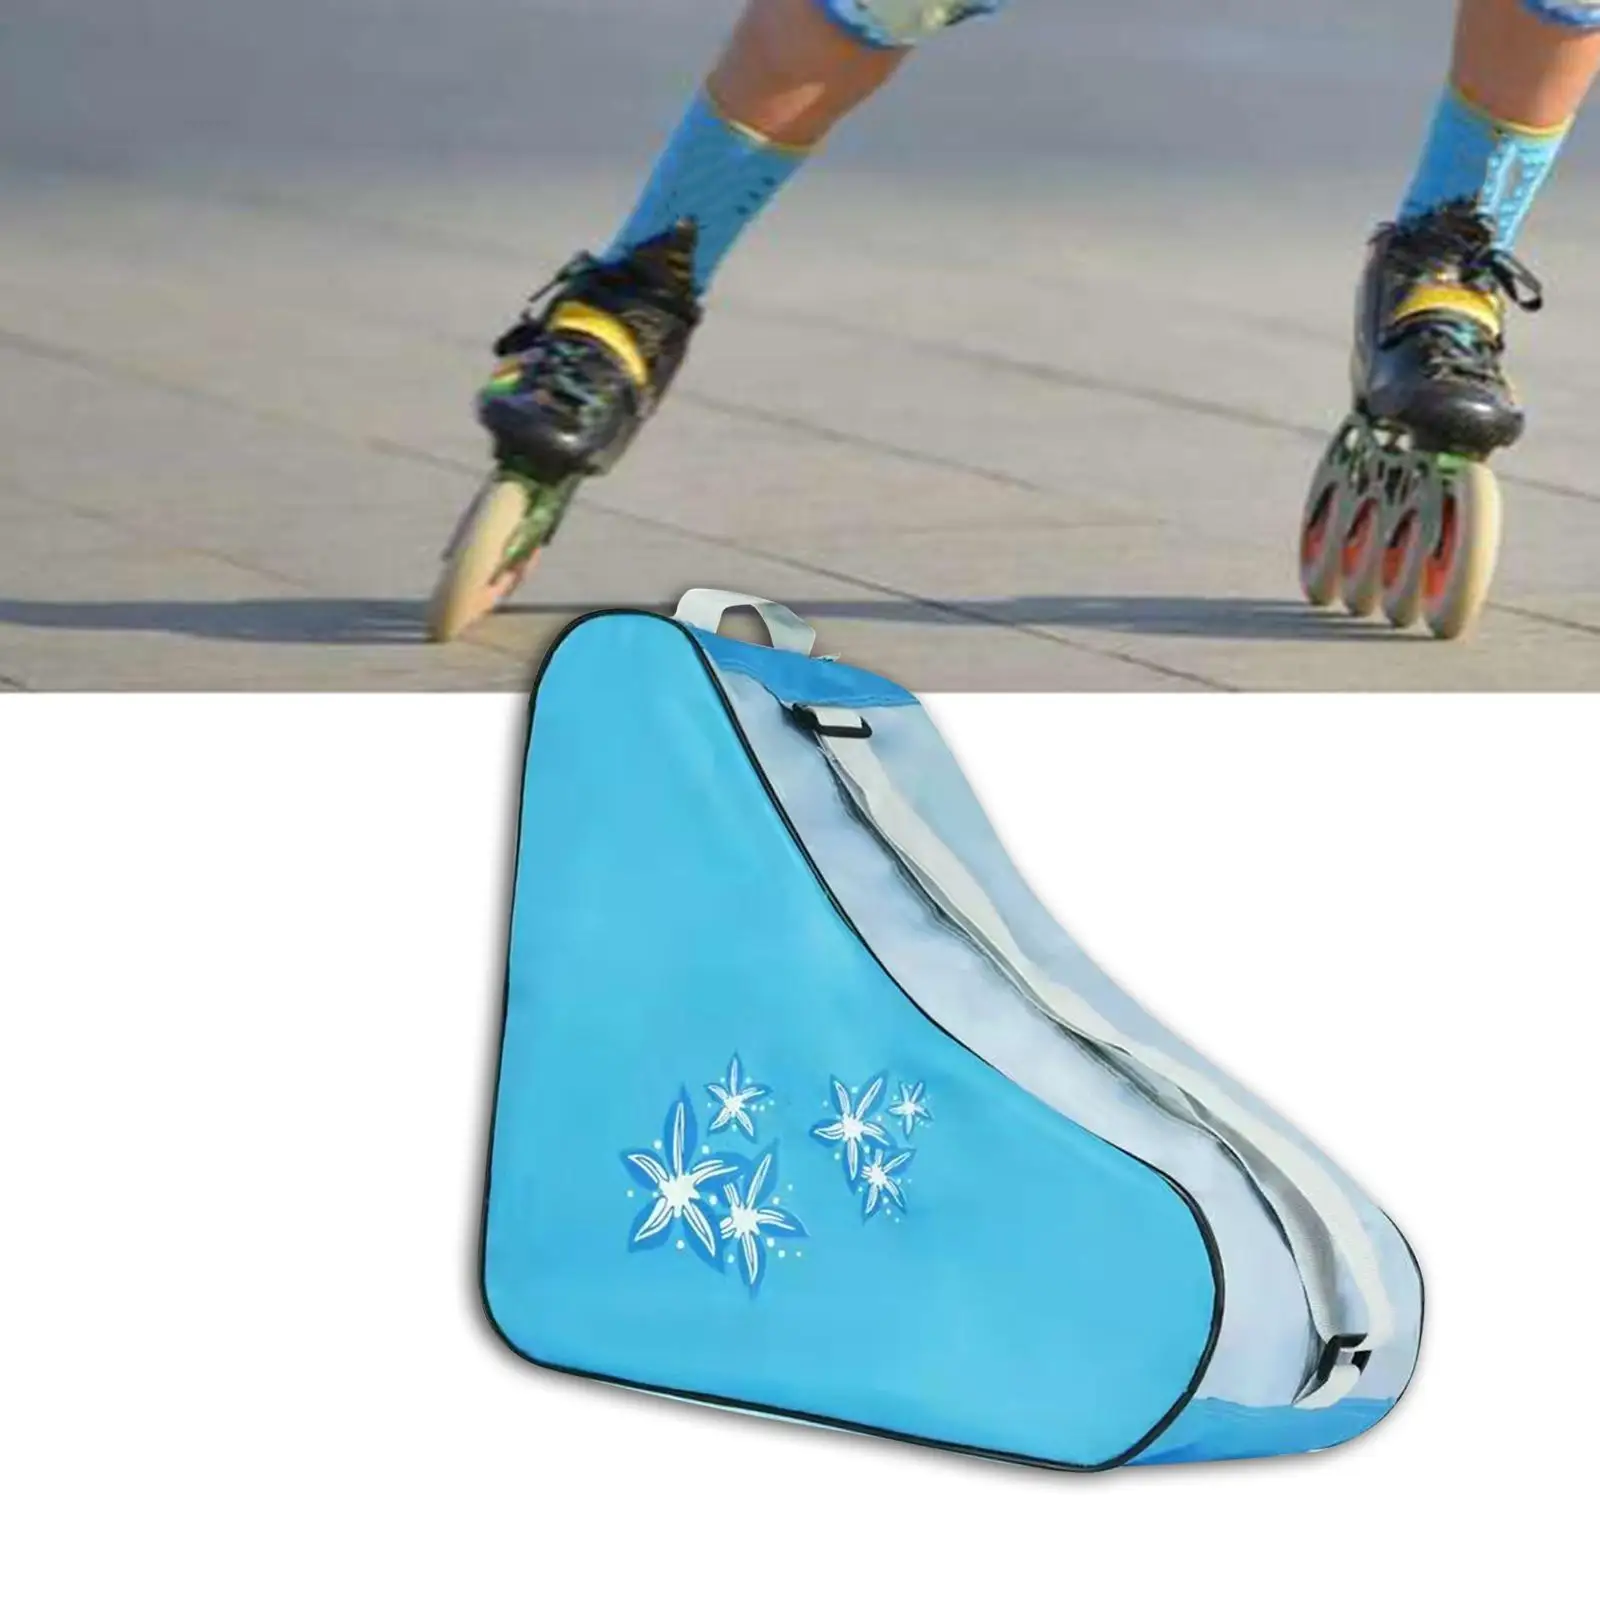 Roller Skate Bag with Shoulder Strap Skate Carry Bag Skating Shoes Carrying Bag for Figure Skates Ice Hockey Skate Quad Skates